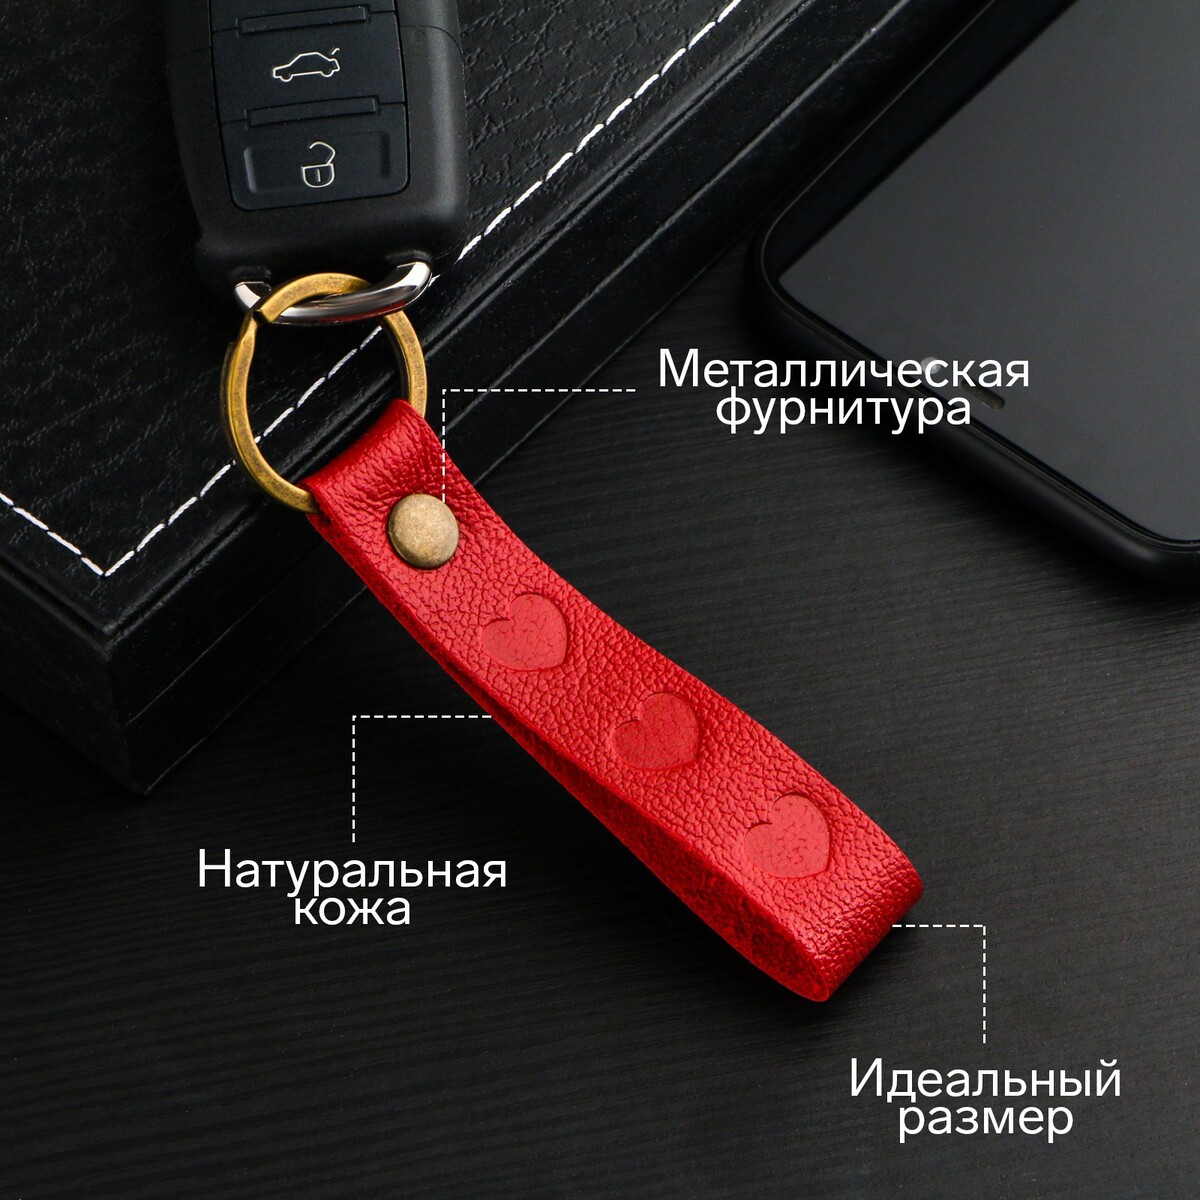 Брелок для автомобильного ключа, ремешок, натуральная кожа, красный, сердце гайка m12x1 5 44 под шестигранник спец внутр красный 20 2 ключа